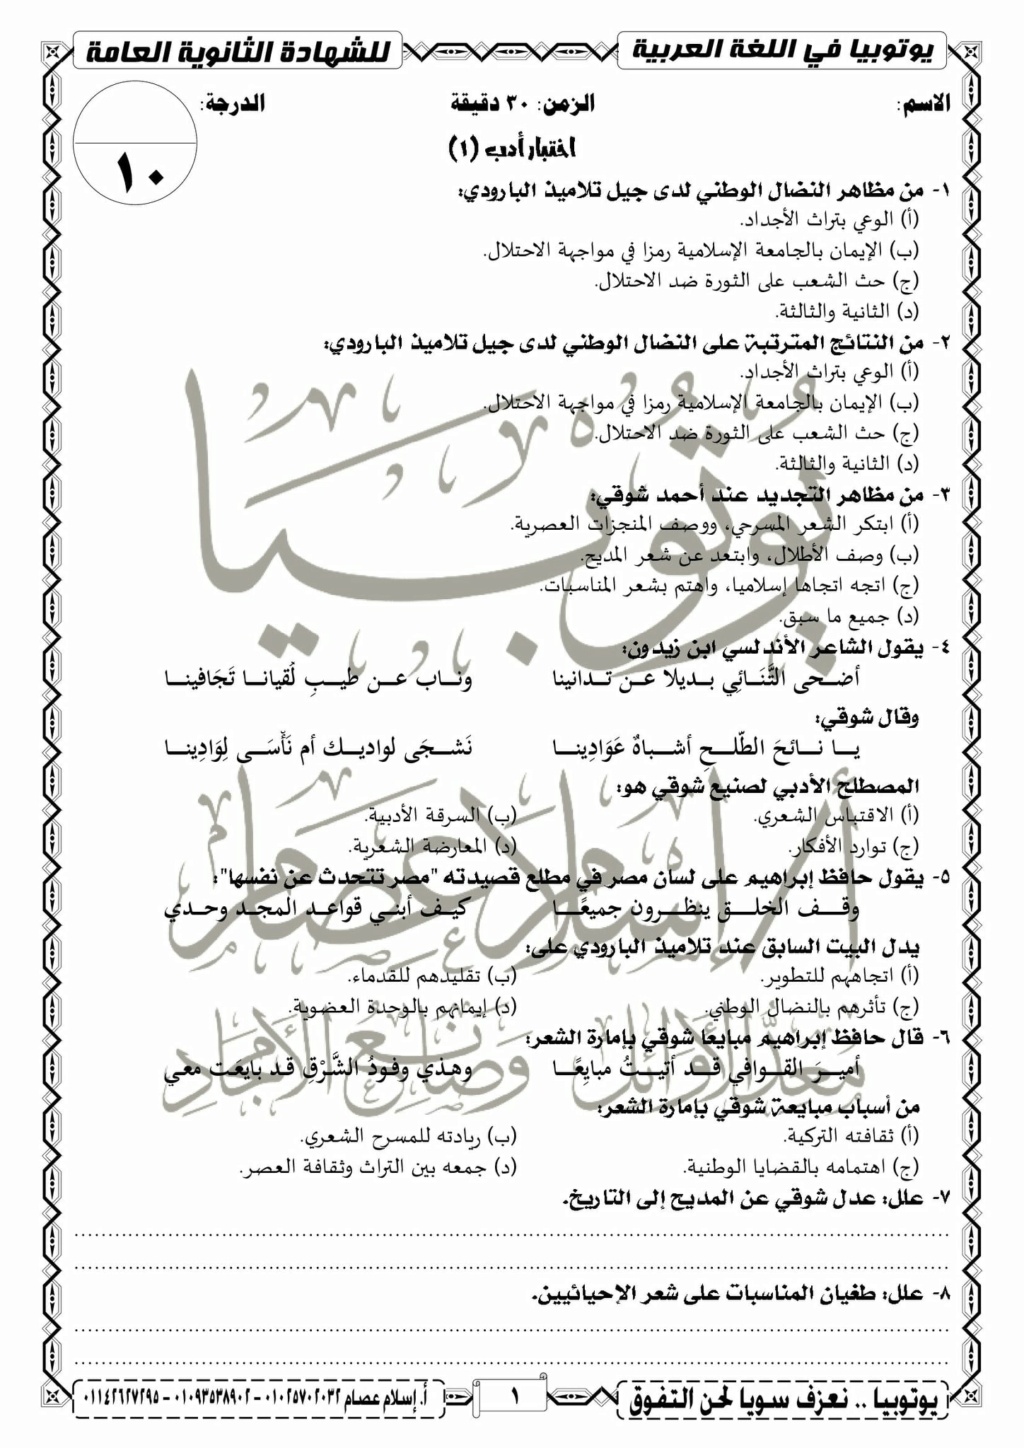 13 اختبار لغة عربية للصف الثالث الثانوي نظام جديد 2021 أ/ إسلام عصام 1192